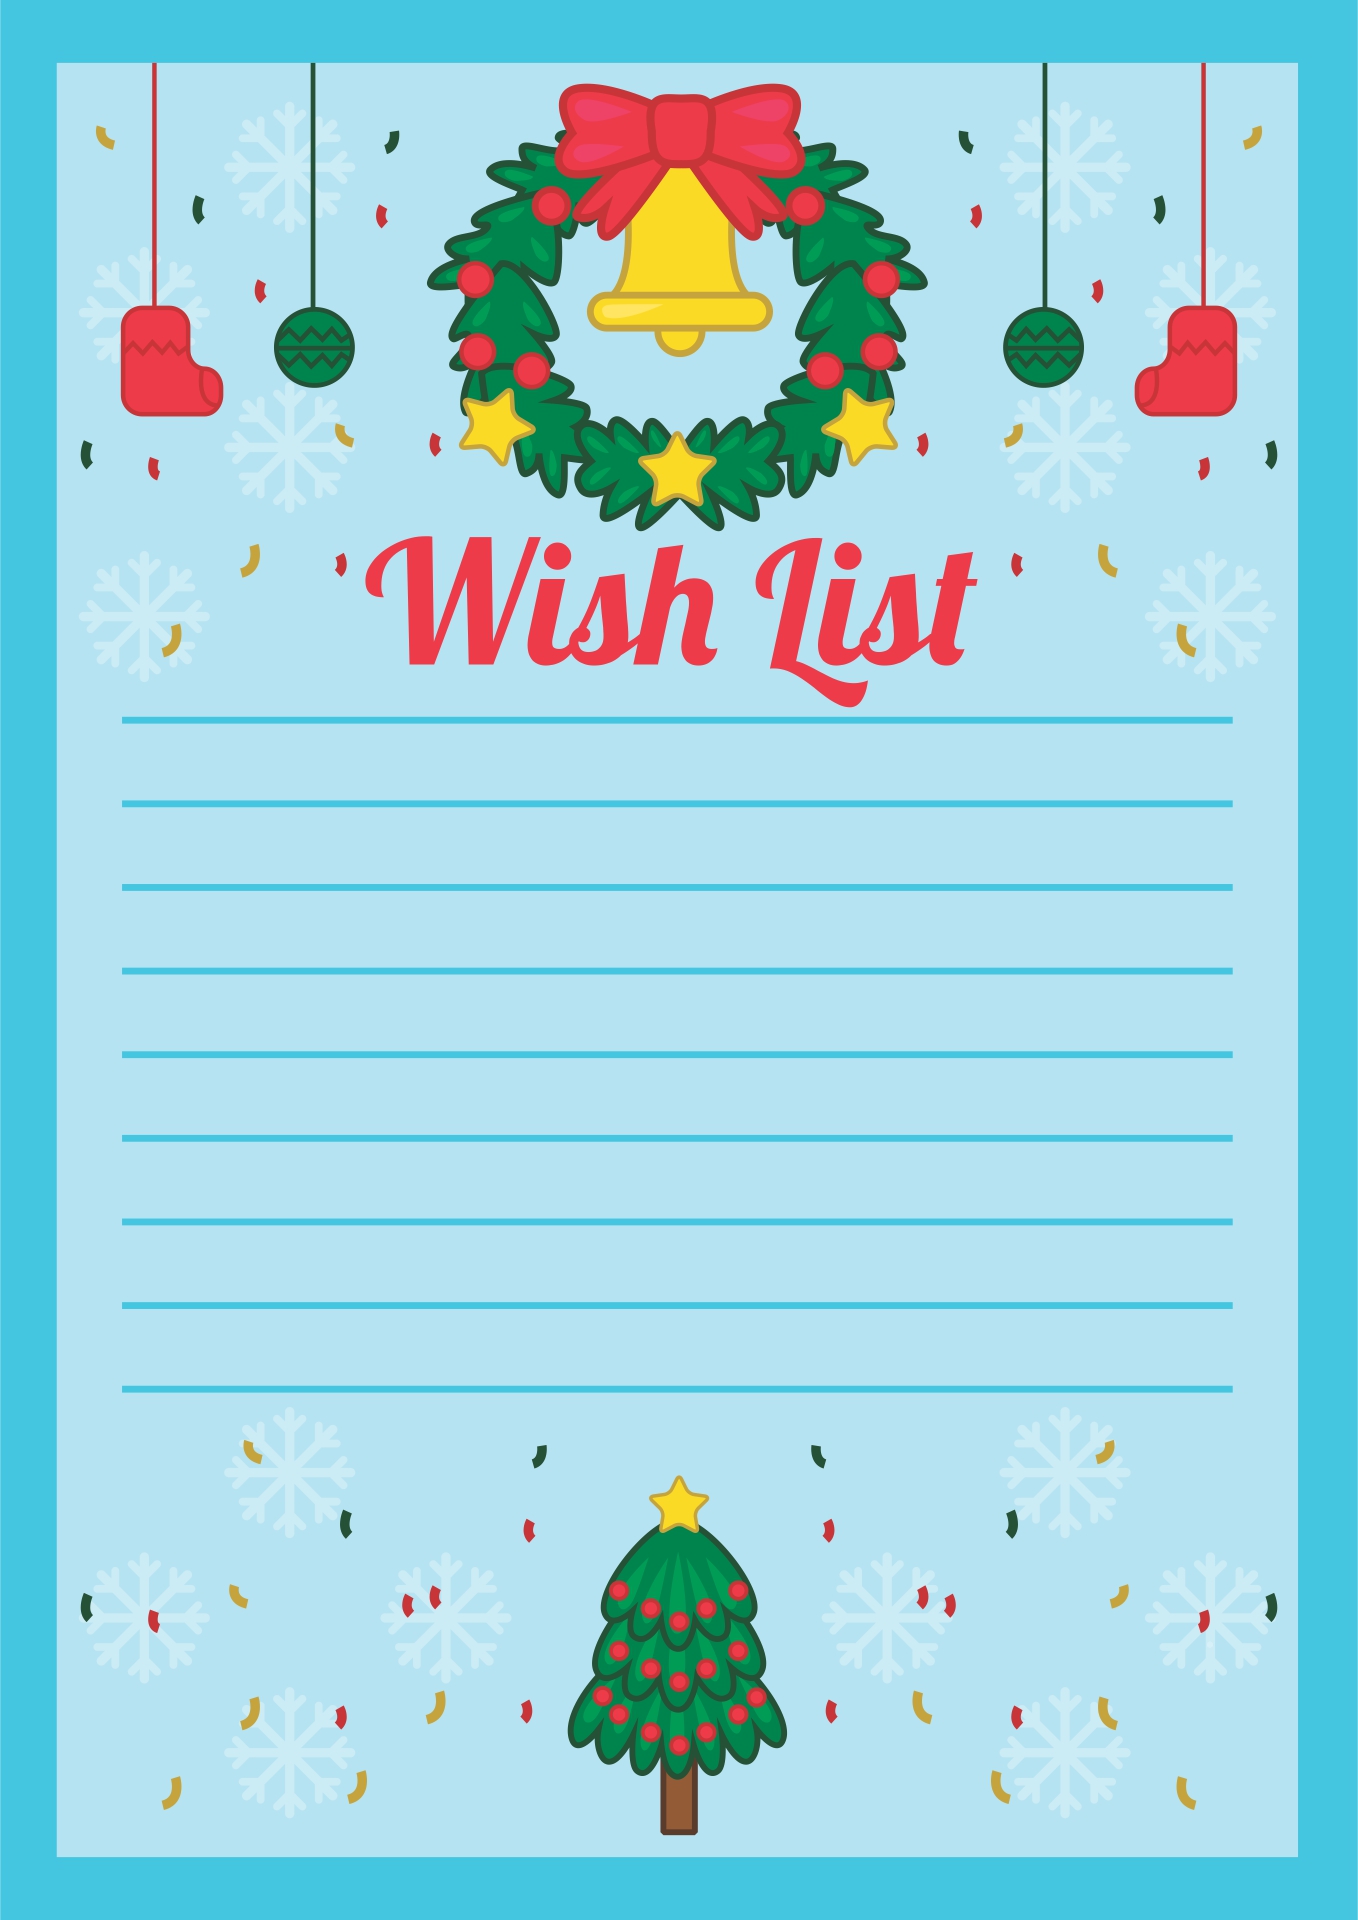 Printable Christmas Wish List Templates